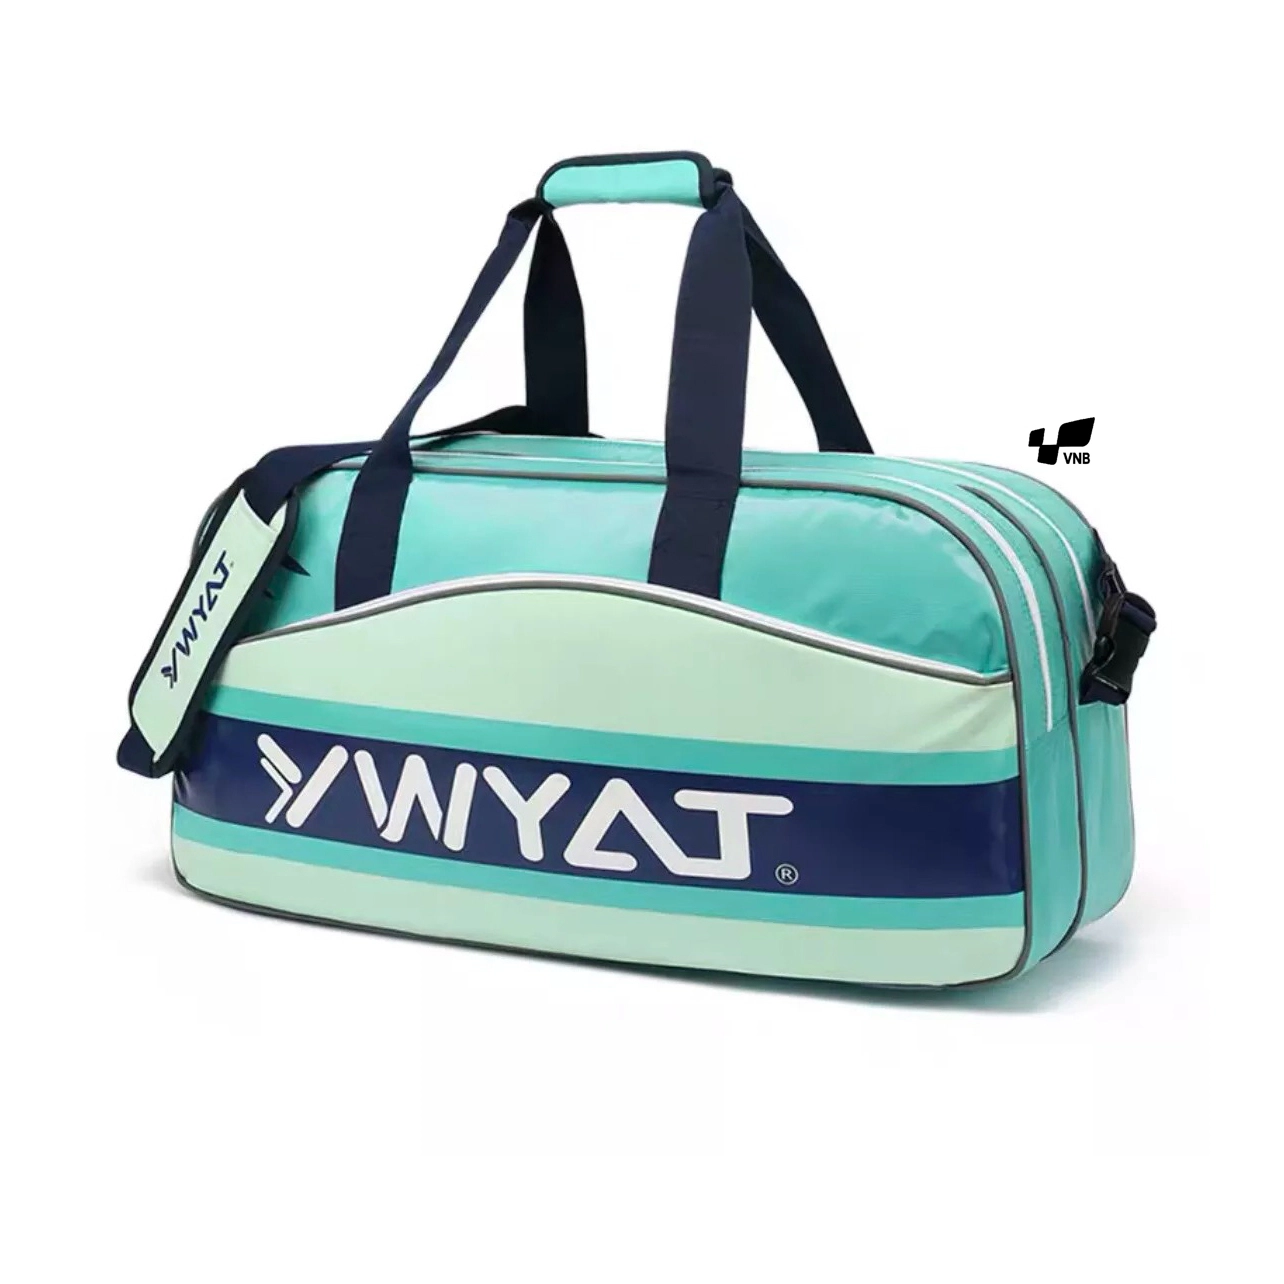 Túi cầu lông Ywyat CF-996 Xanh ngọc - Gia công